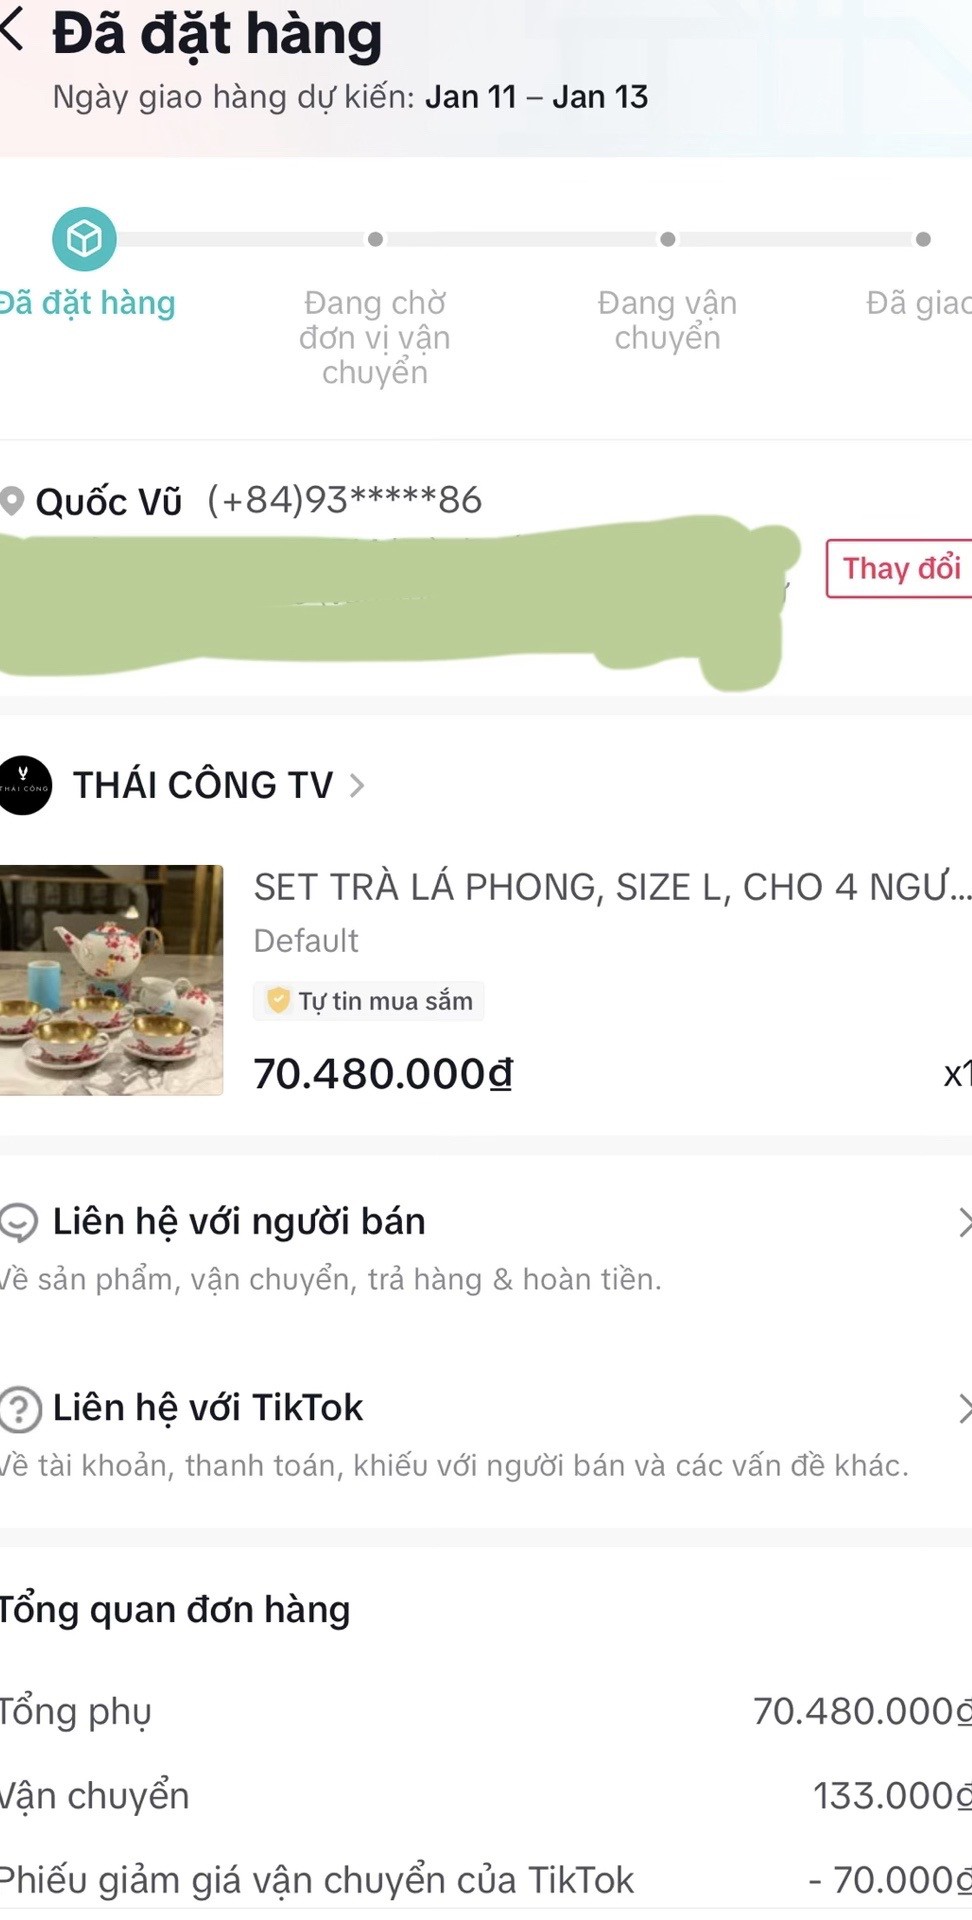 Thái Công livesream bán hàng trên TikTok: "Tôi bán những thứ các bạn không cần nhưng khao khát có" - 6